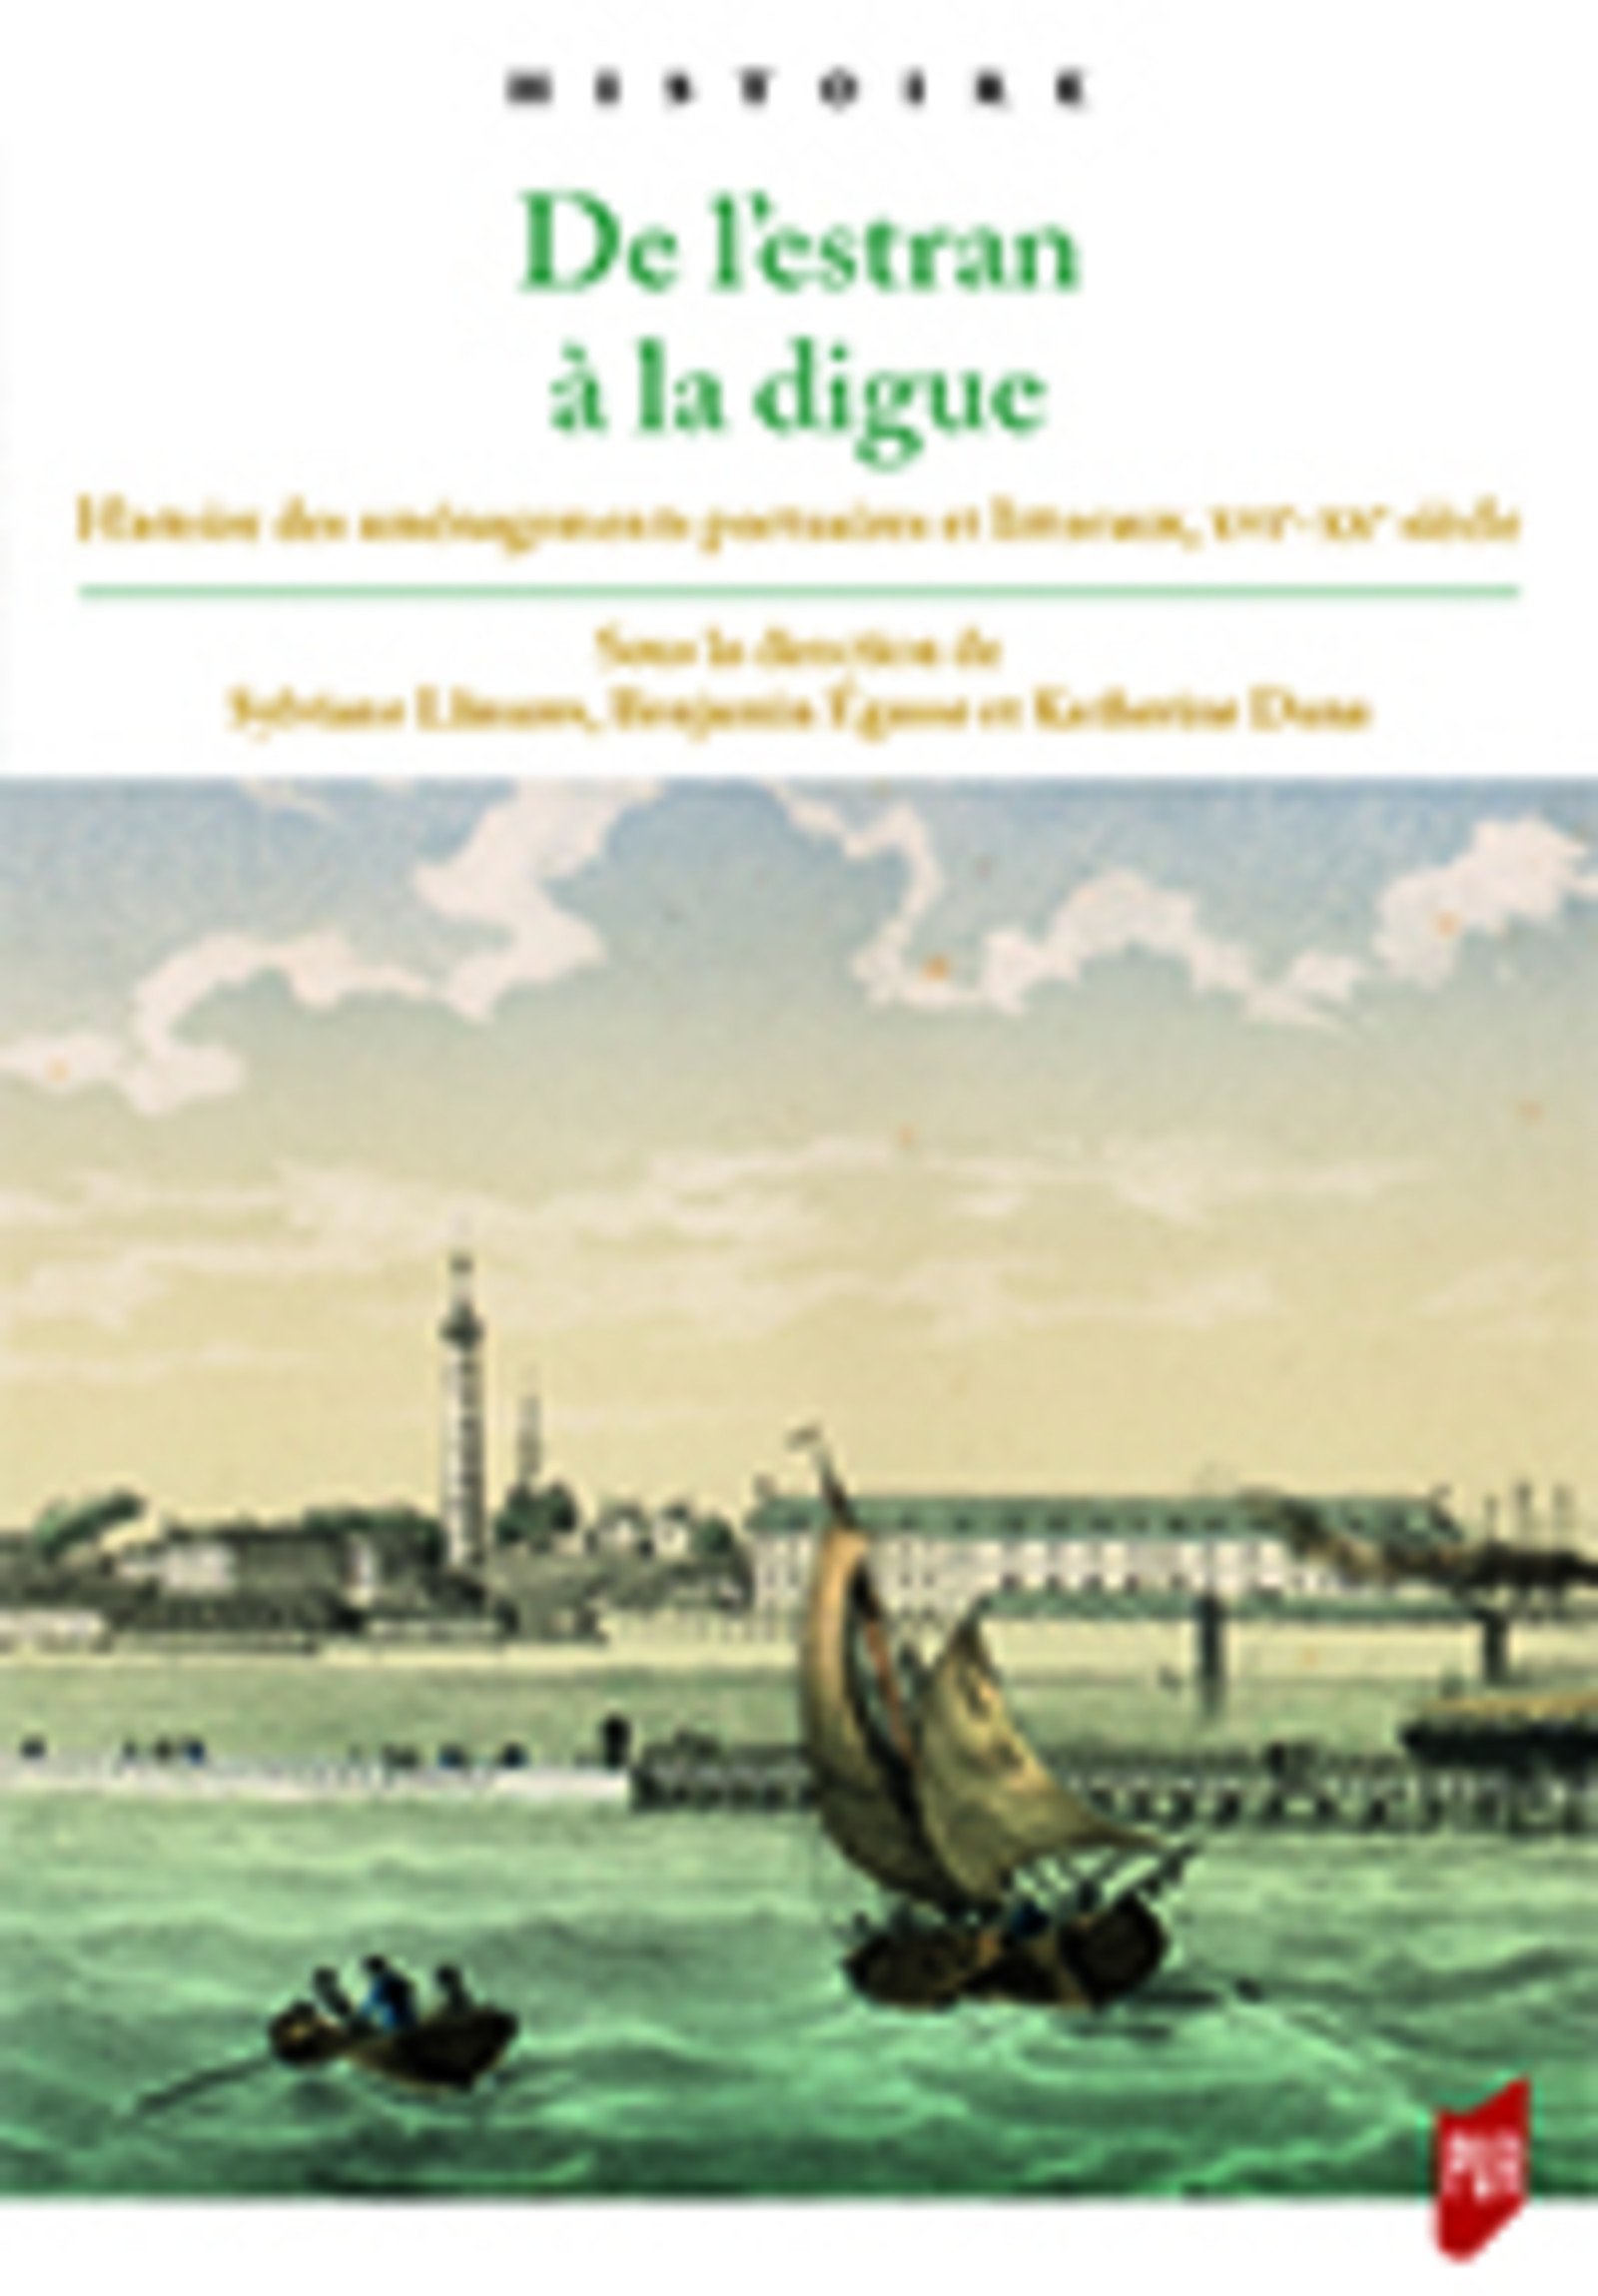 De l'Estran à la digue. Histoire des aménagements portuaires et littoraux, XVIe-XXe siècle, 2018, 414 p.